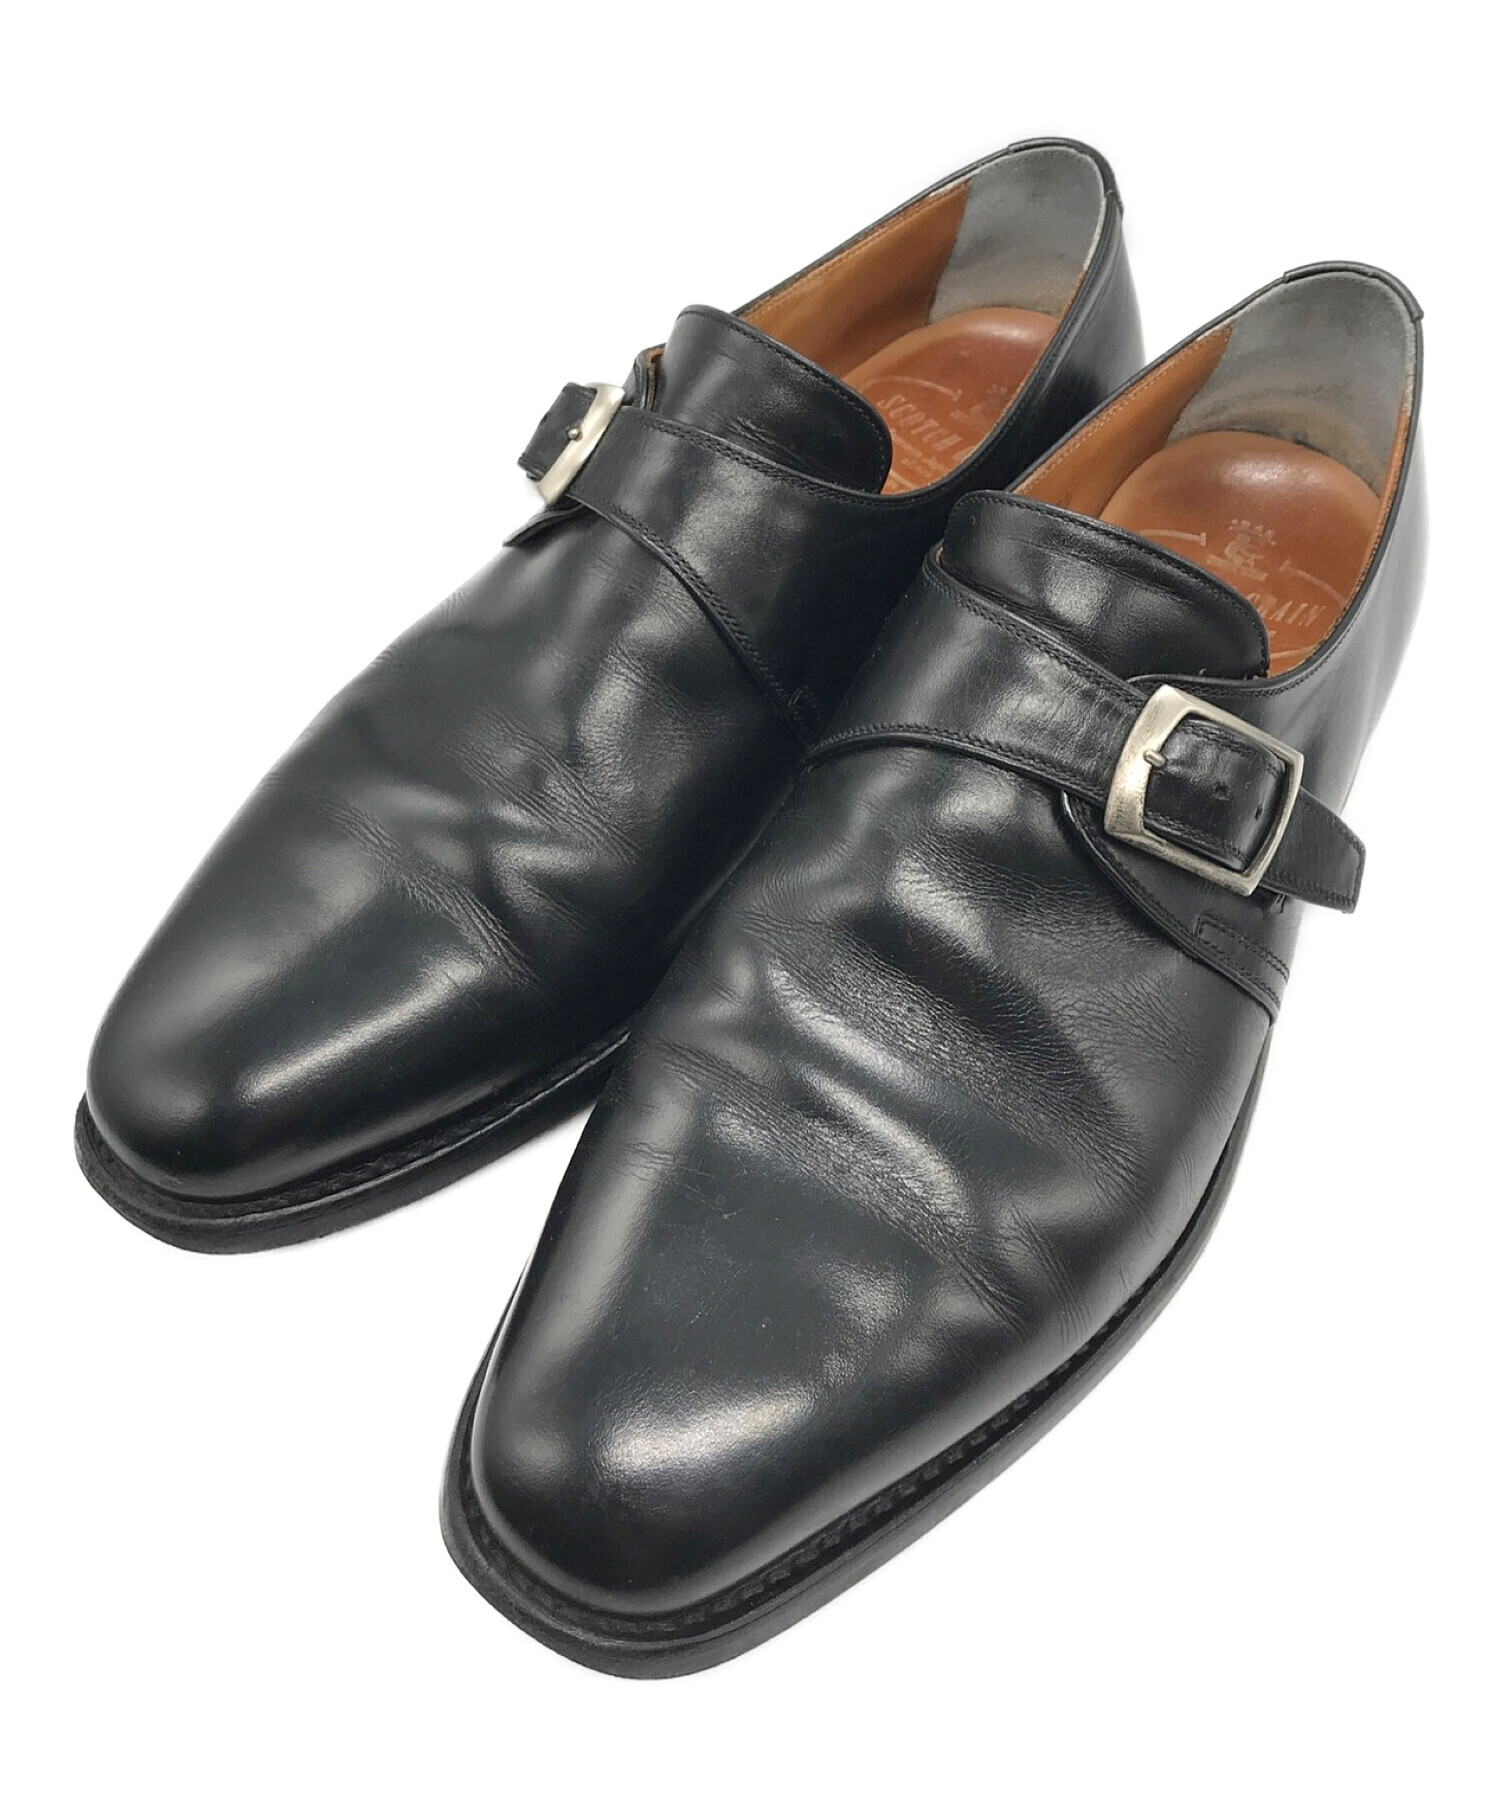 高品質人気SCOTCH GRAIN スコッチグレイン モンクストラップビジネスシューズ 靴